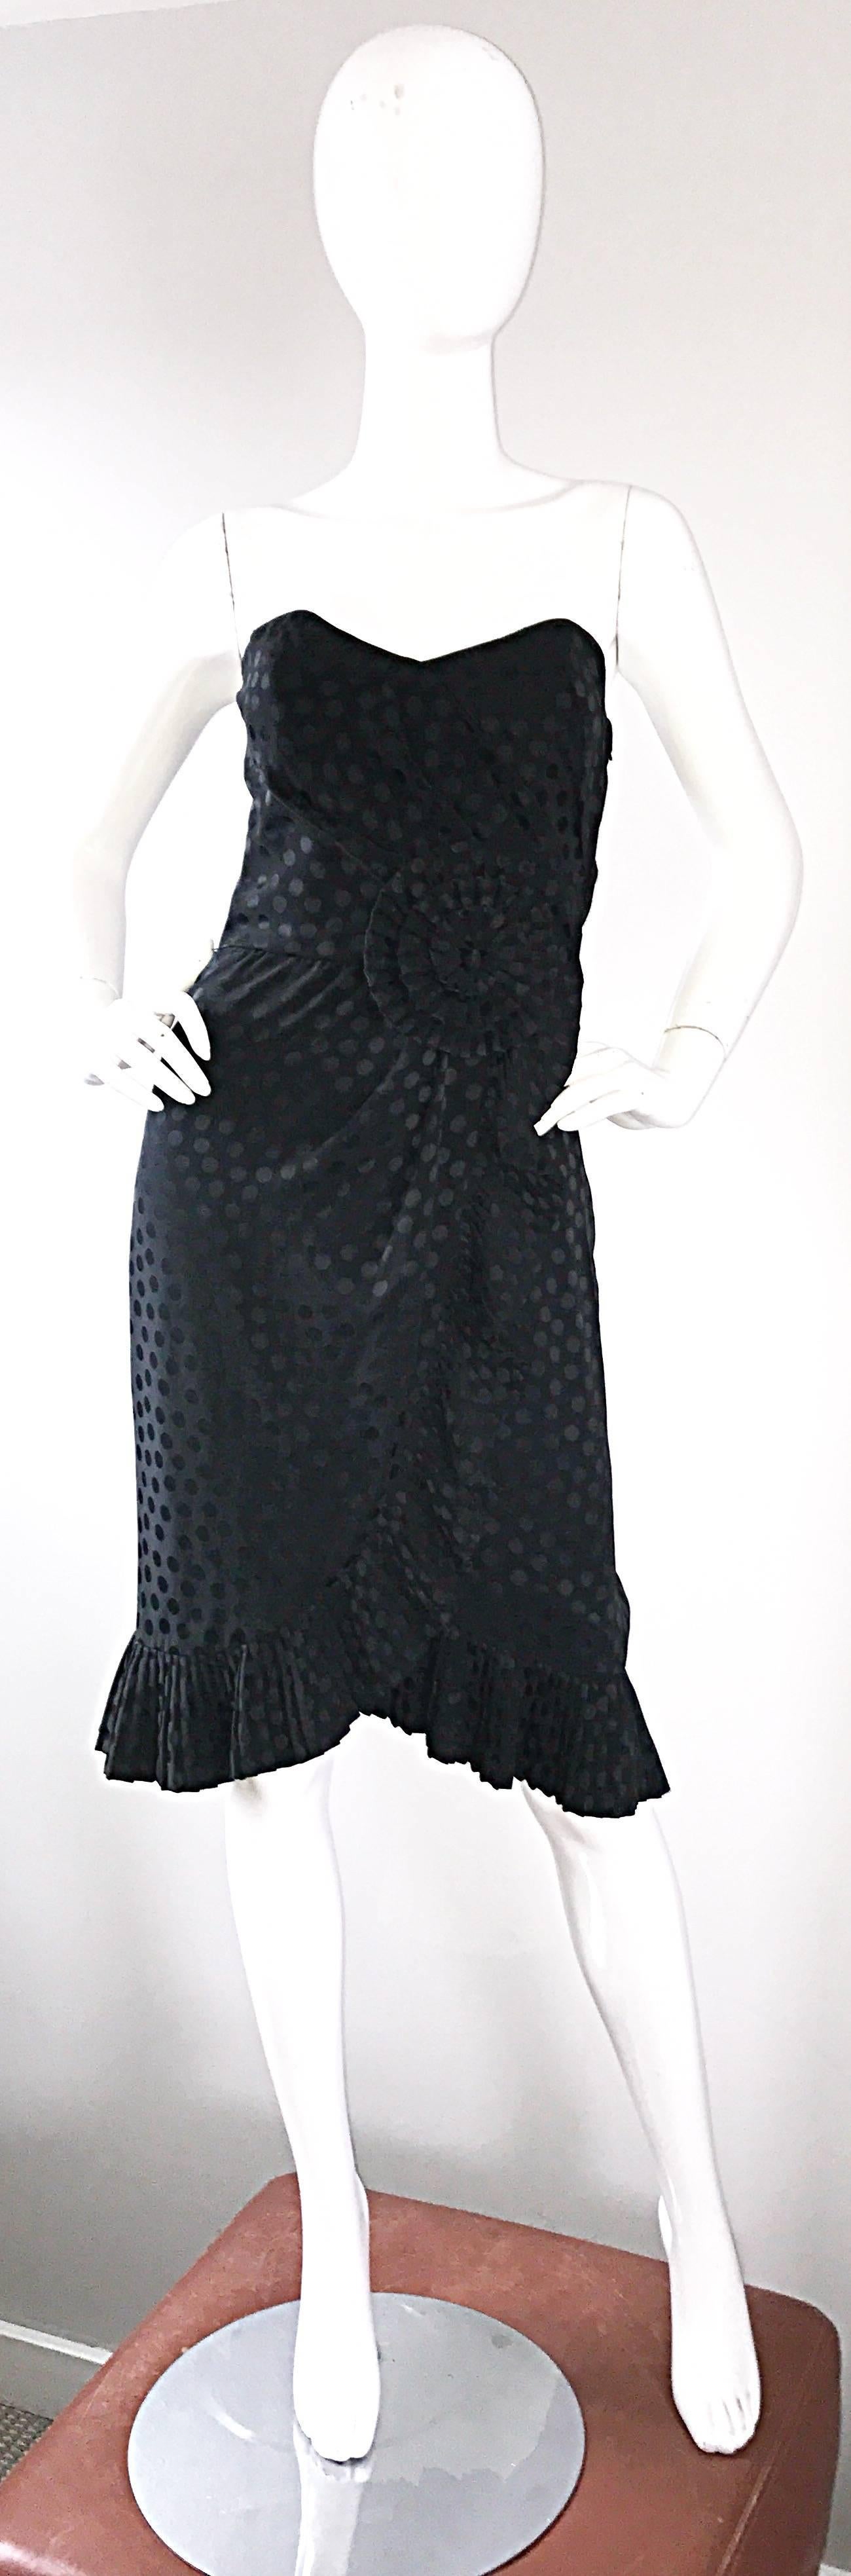 Robe bustier noire en soie vintage ALBERT NIPON des années 90 ! Il présente des pois noirs sur toute sa surface, des plis origami à la taille et un ourlet plissé. Une petite robe noire si flatteuse, avec une telle attention aux détails. Une armature